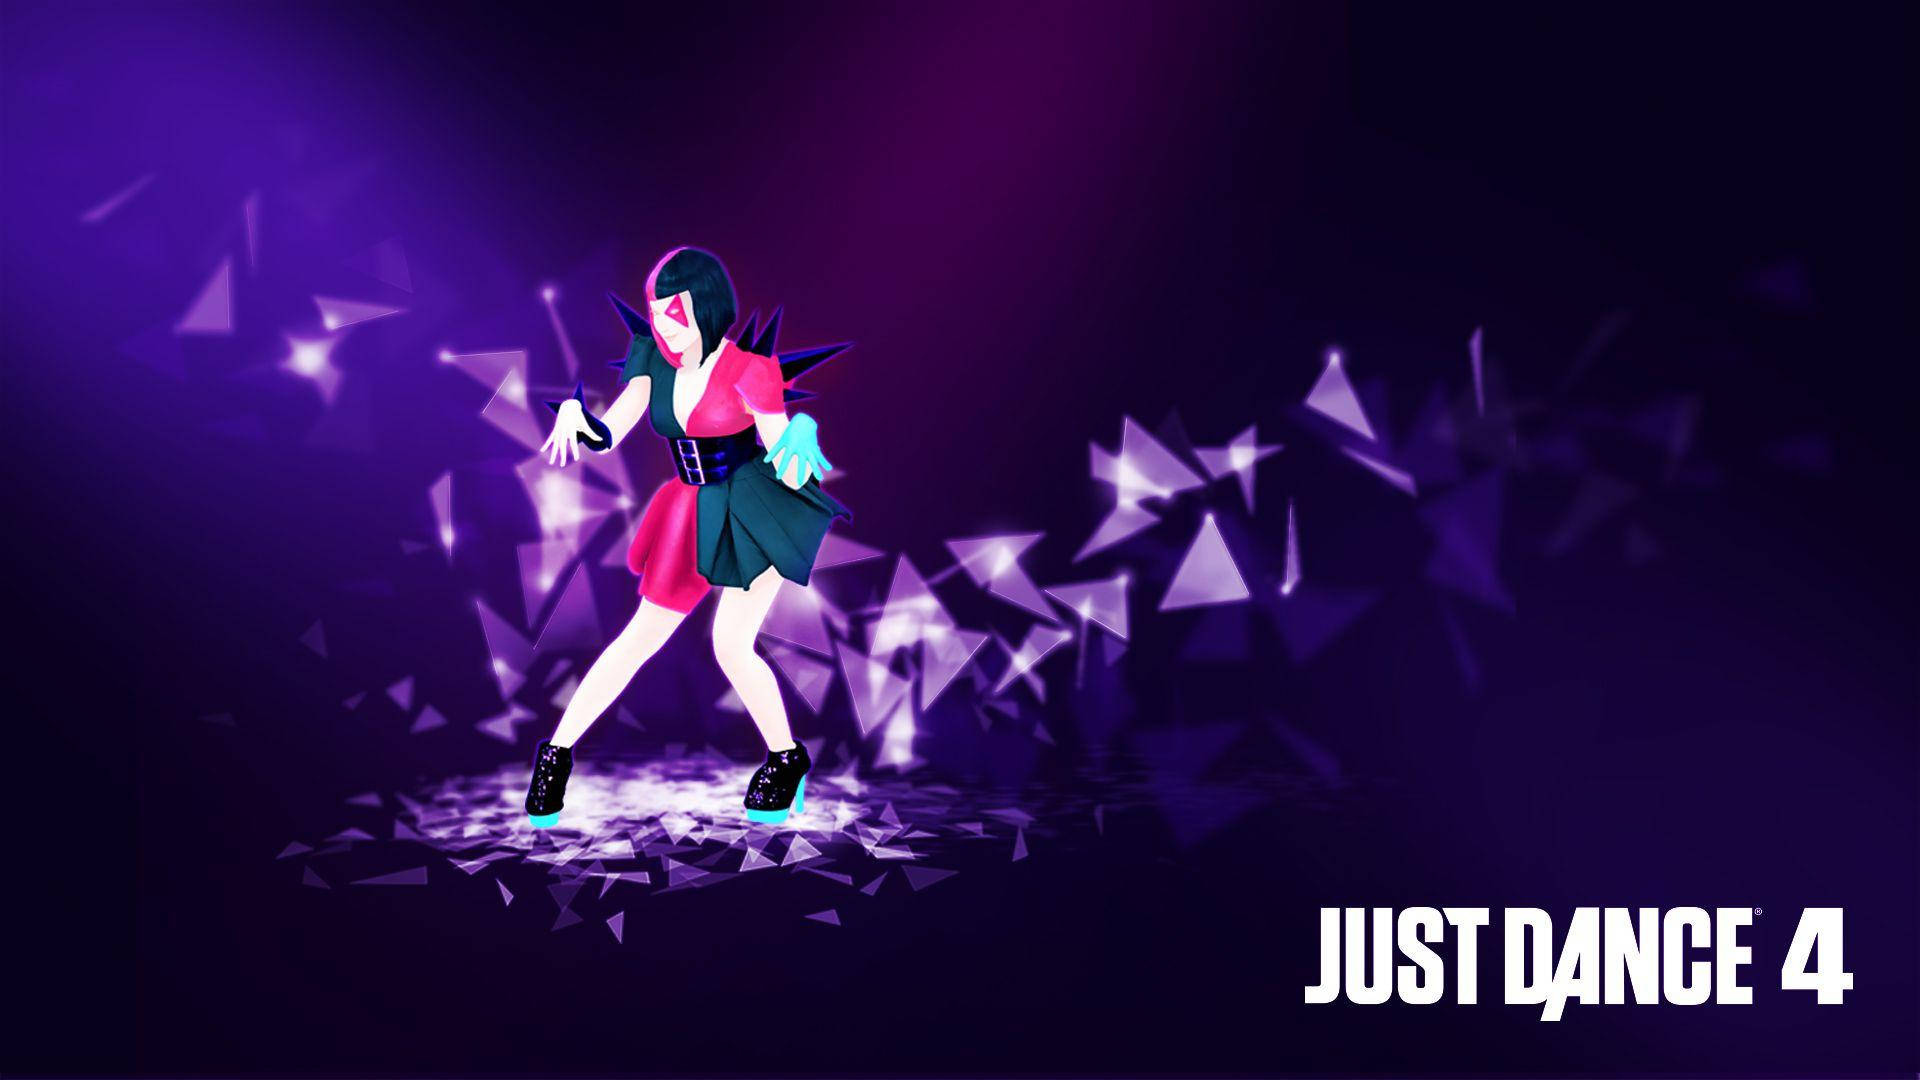 Bailarínde Just Dance 4 Con Triángulos Flotantes. Fondo de pantalla